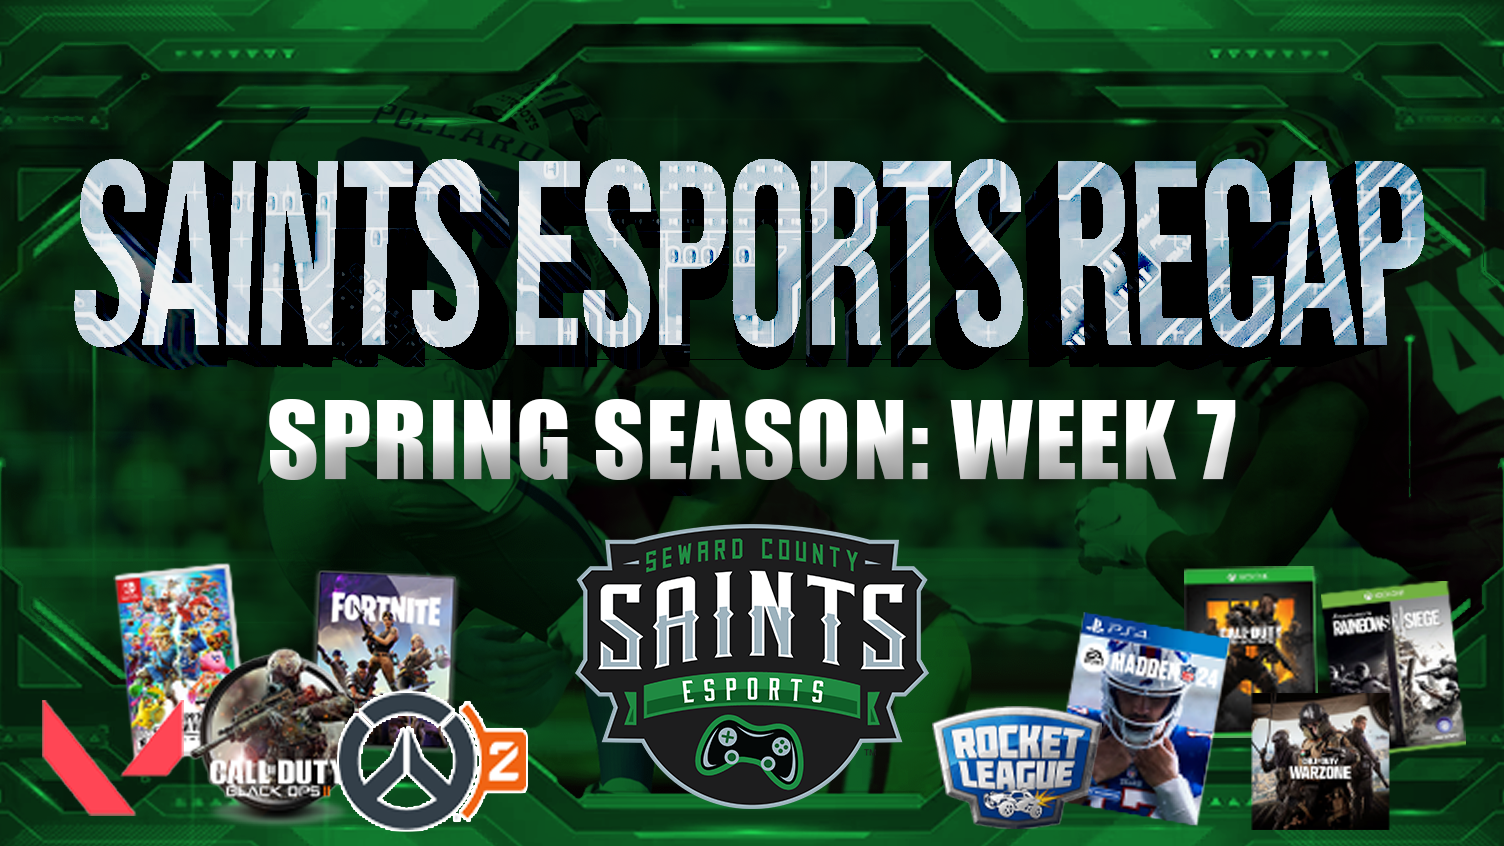 Saints Esports Weekly Recap, Week 9